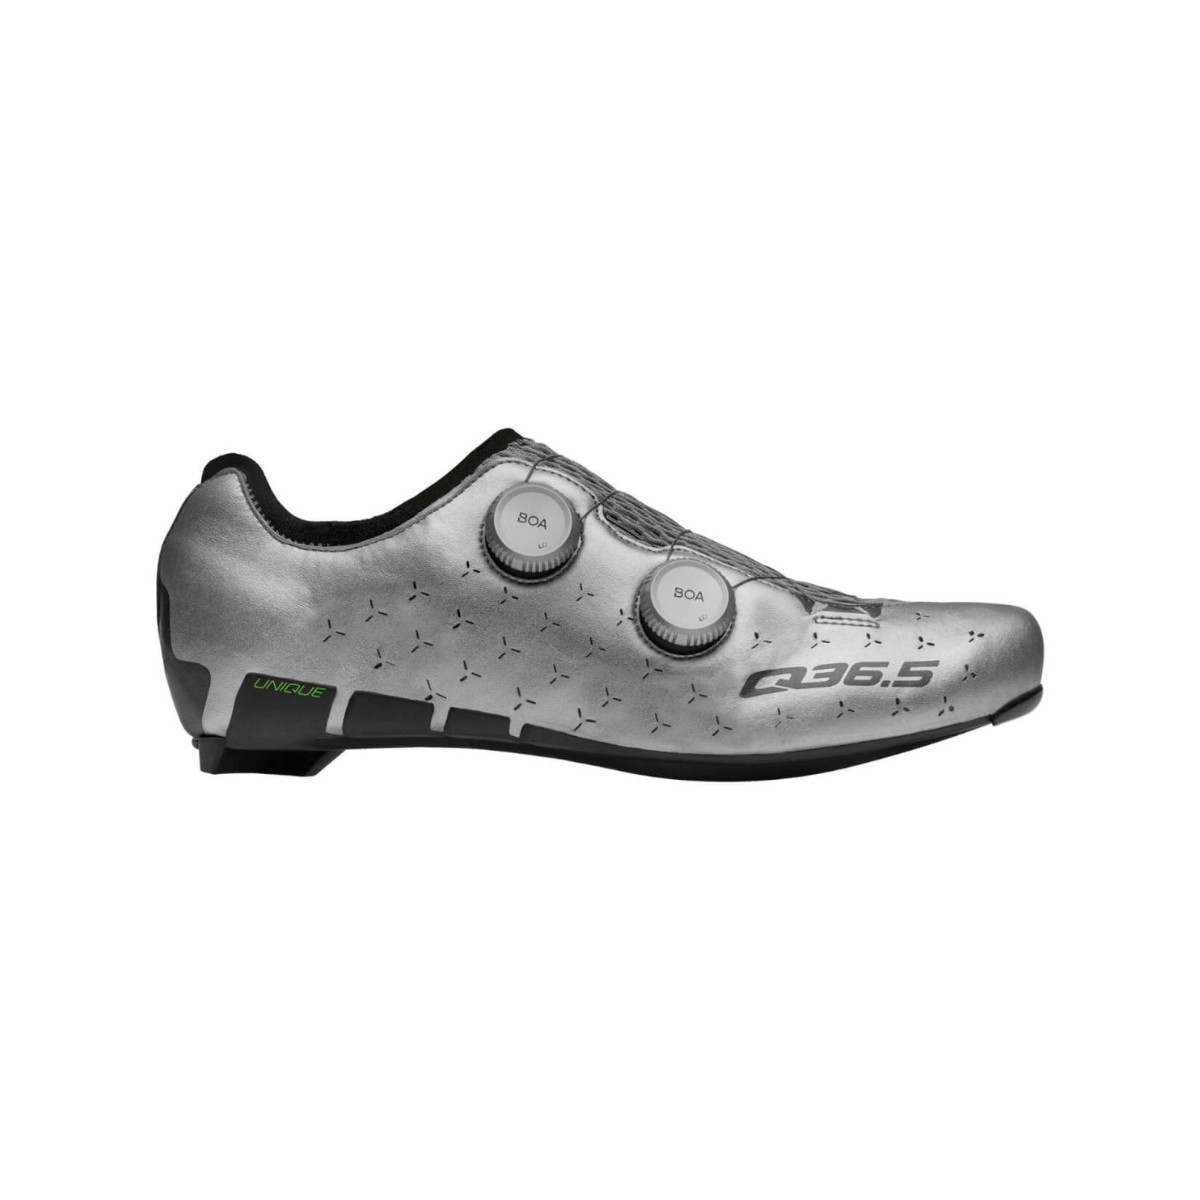 Shoes Q36.5 Unique Road Silver, Size 43 - EUR